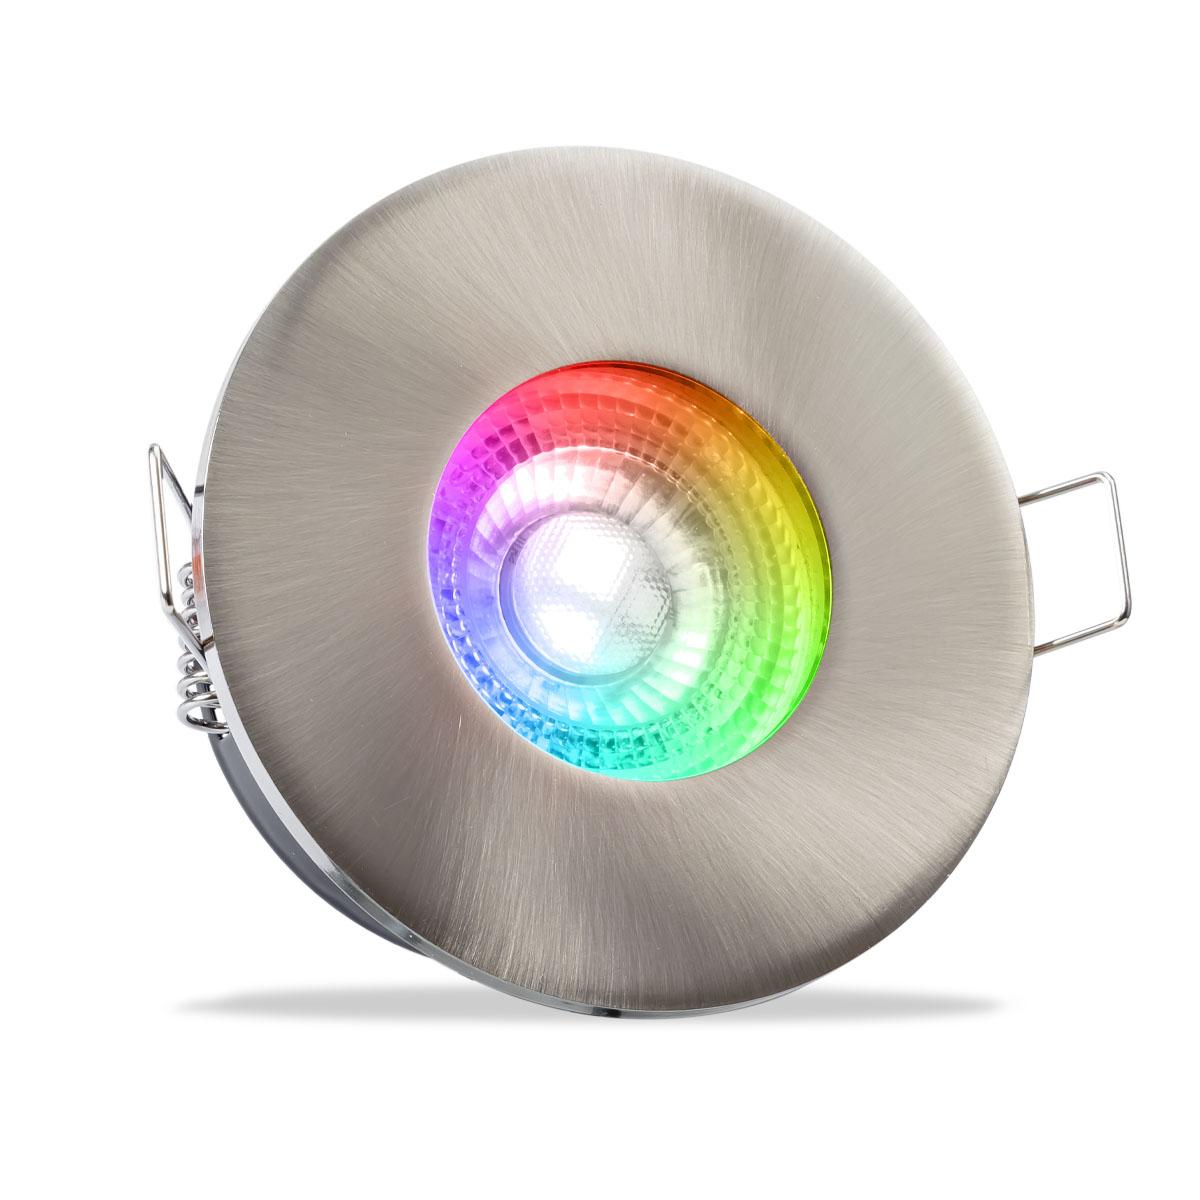 Einbauspot IP65 rund - Abdeckring:  Edelstahl - LED Leuchtmittel:  GU10 3W RGBW